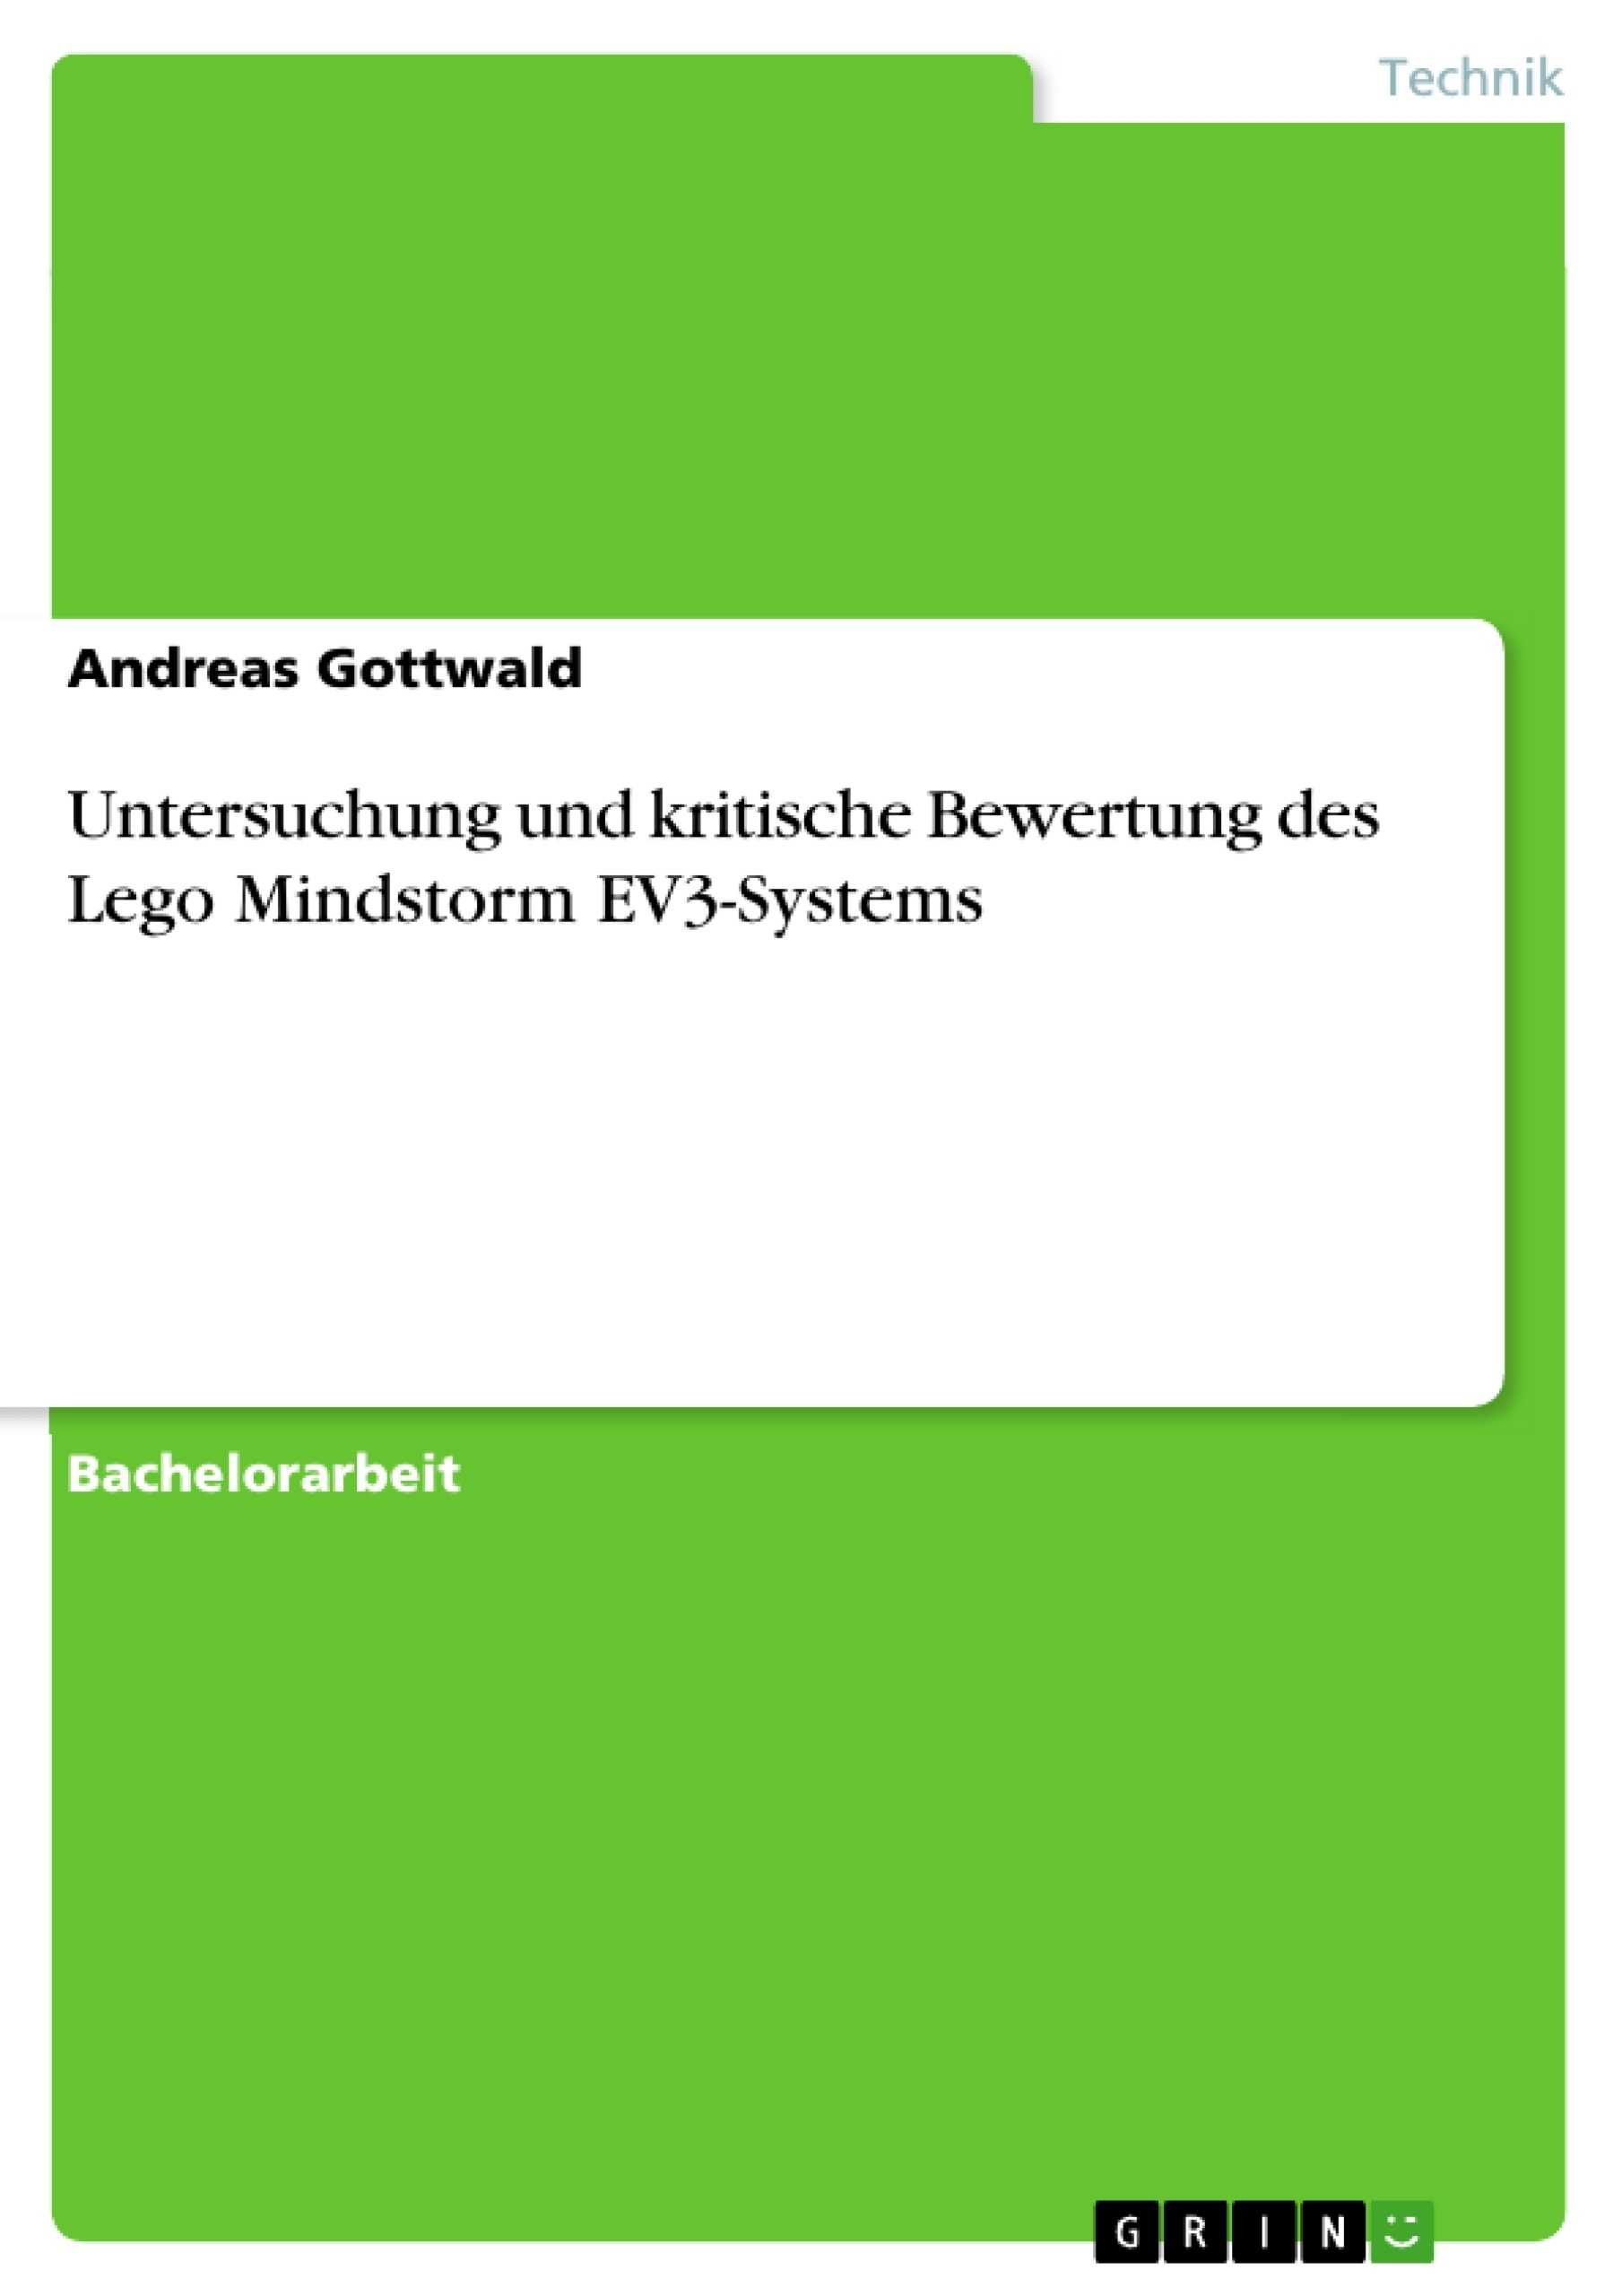 Title: Untersuchung und kritische Bewertung des Lego Mindstorm EV3-Systems